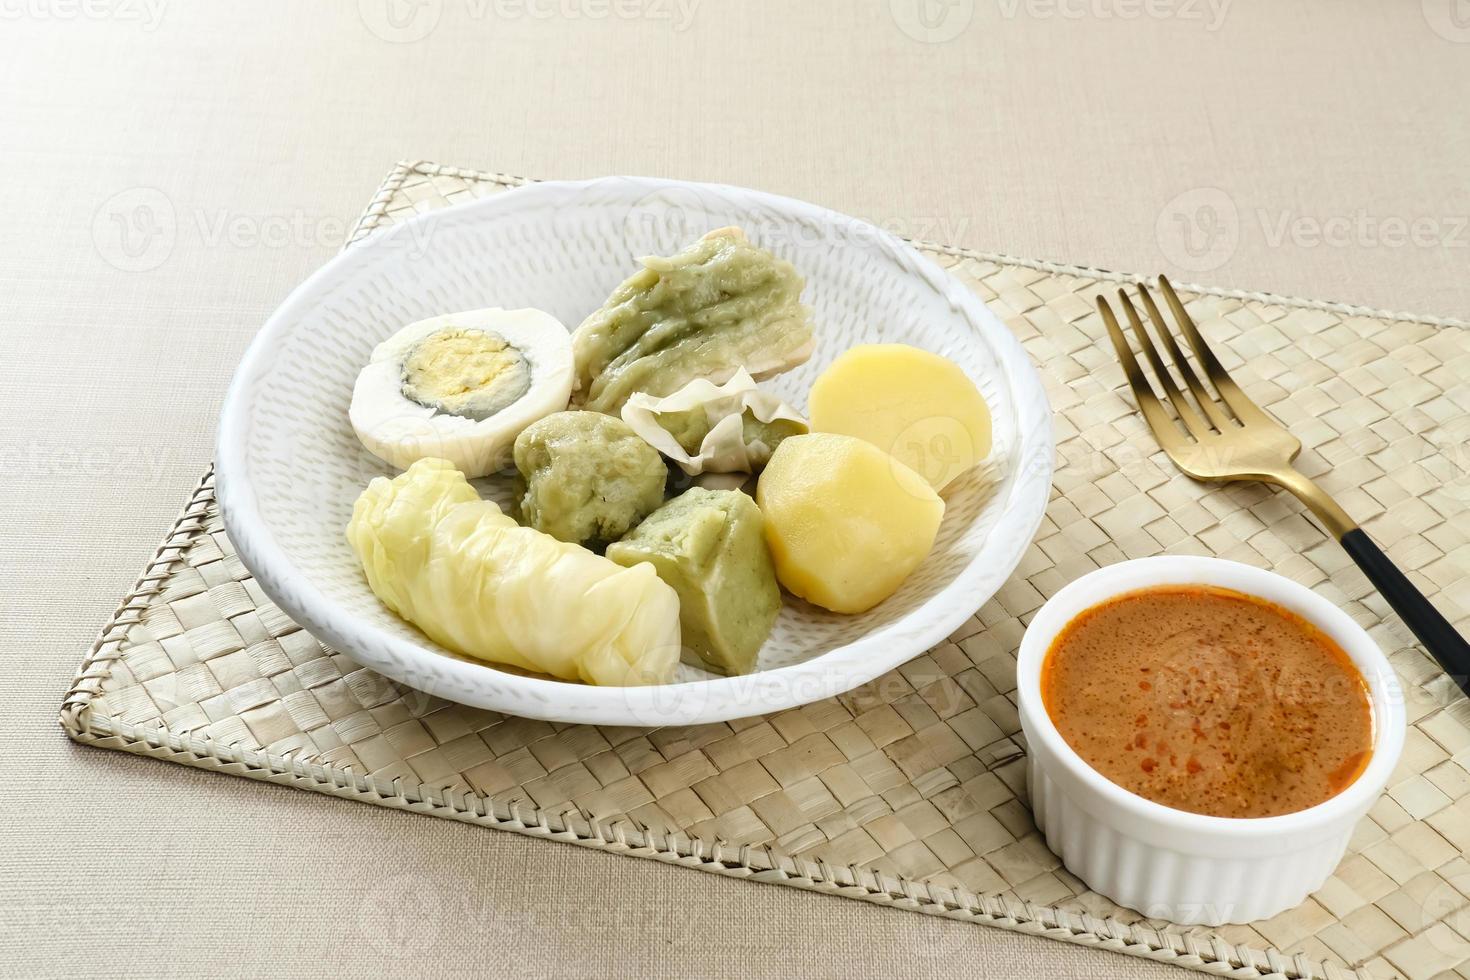 siomay bandung, albóndigas al vapor con huevo cocido, tofu, patatas y rollo de col. Comida callejera tradicional indonesia con salsa de cacahuete y salsa de soja, servida con lima verde. foto